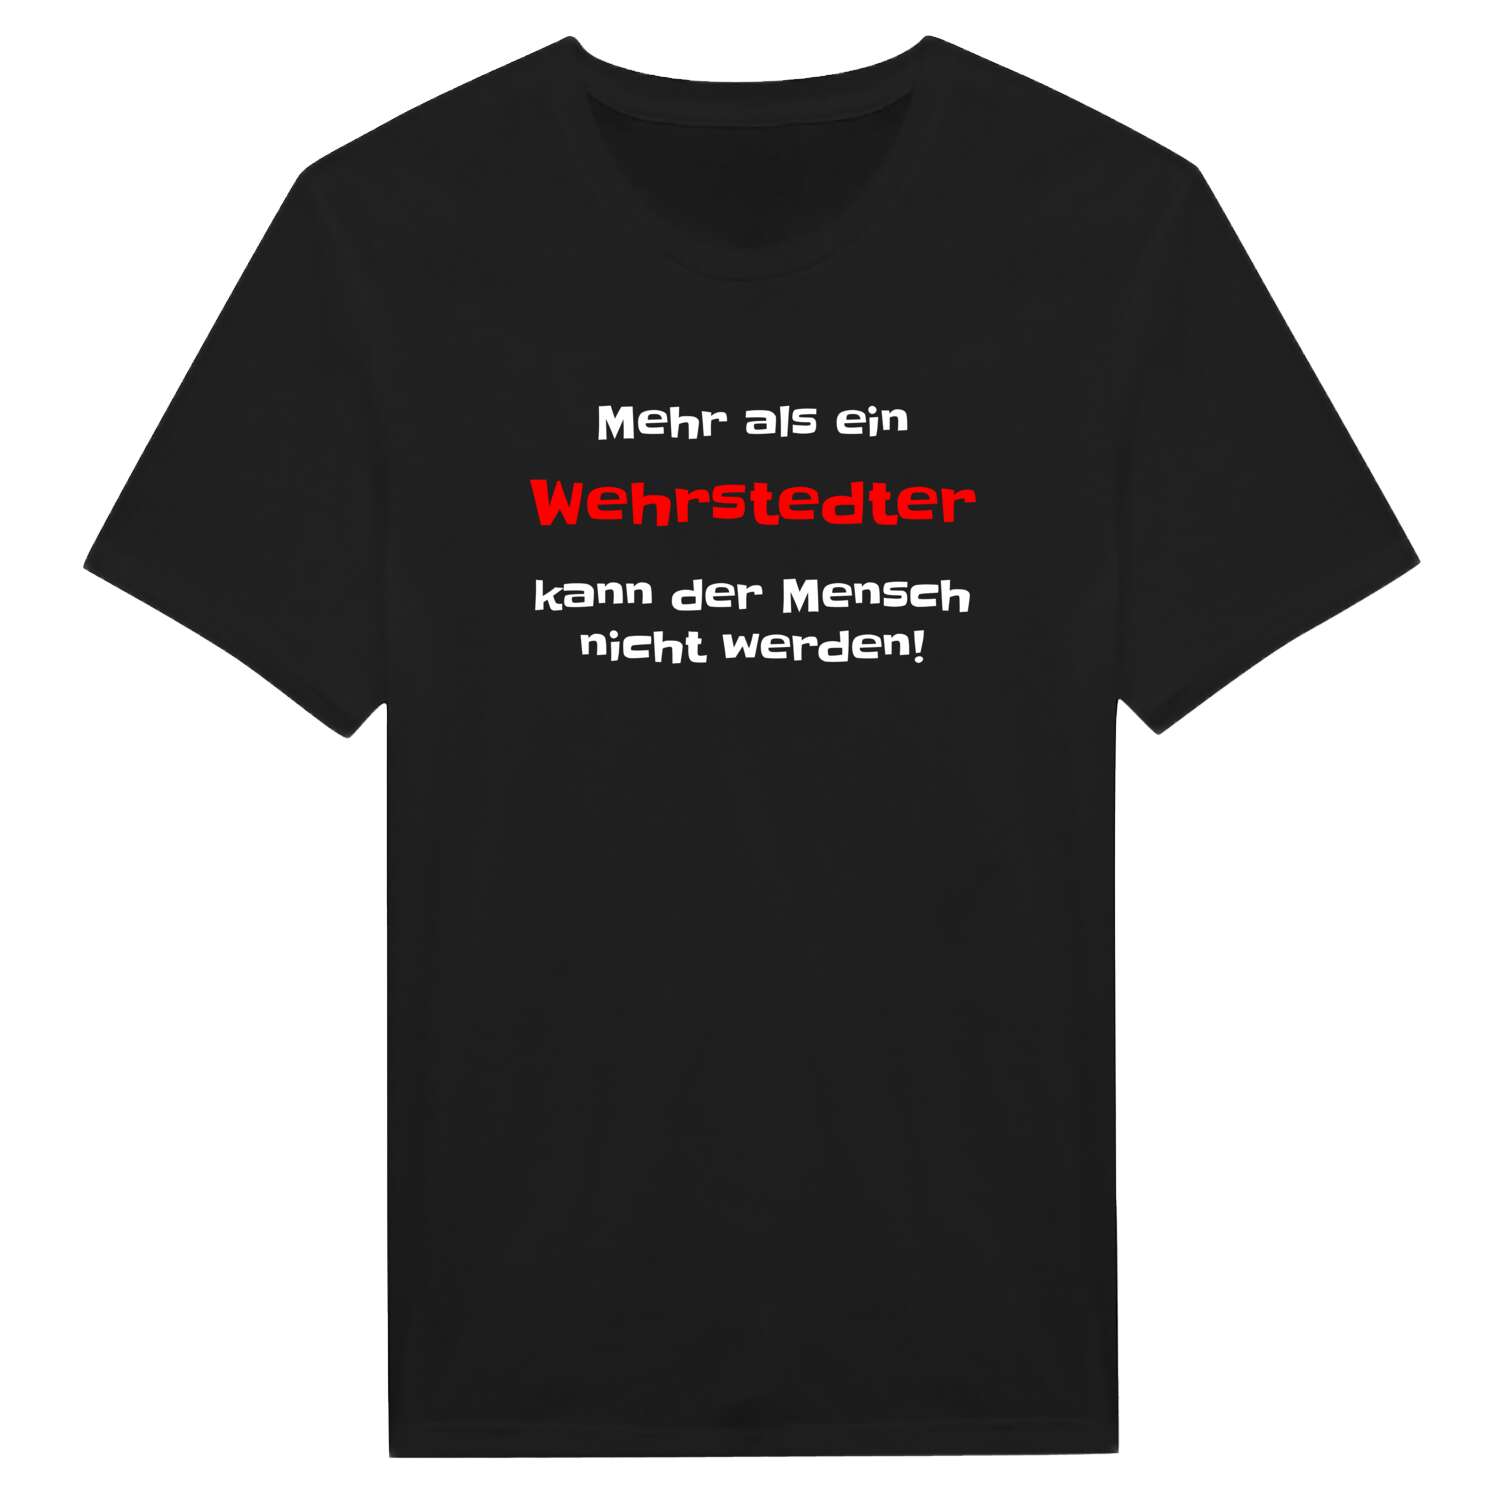 Wehrstedt T-Shirt »Mehr als ein«